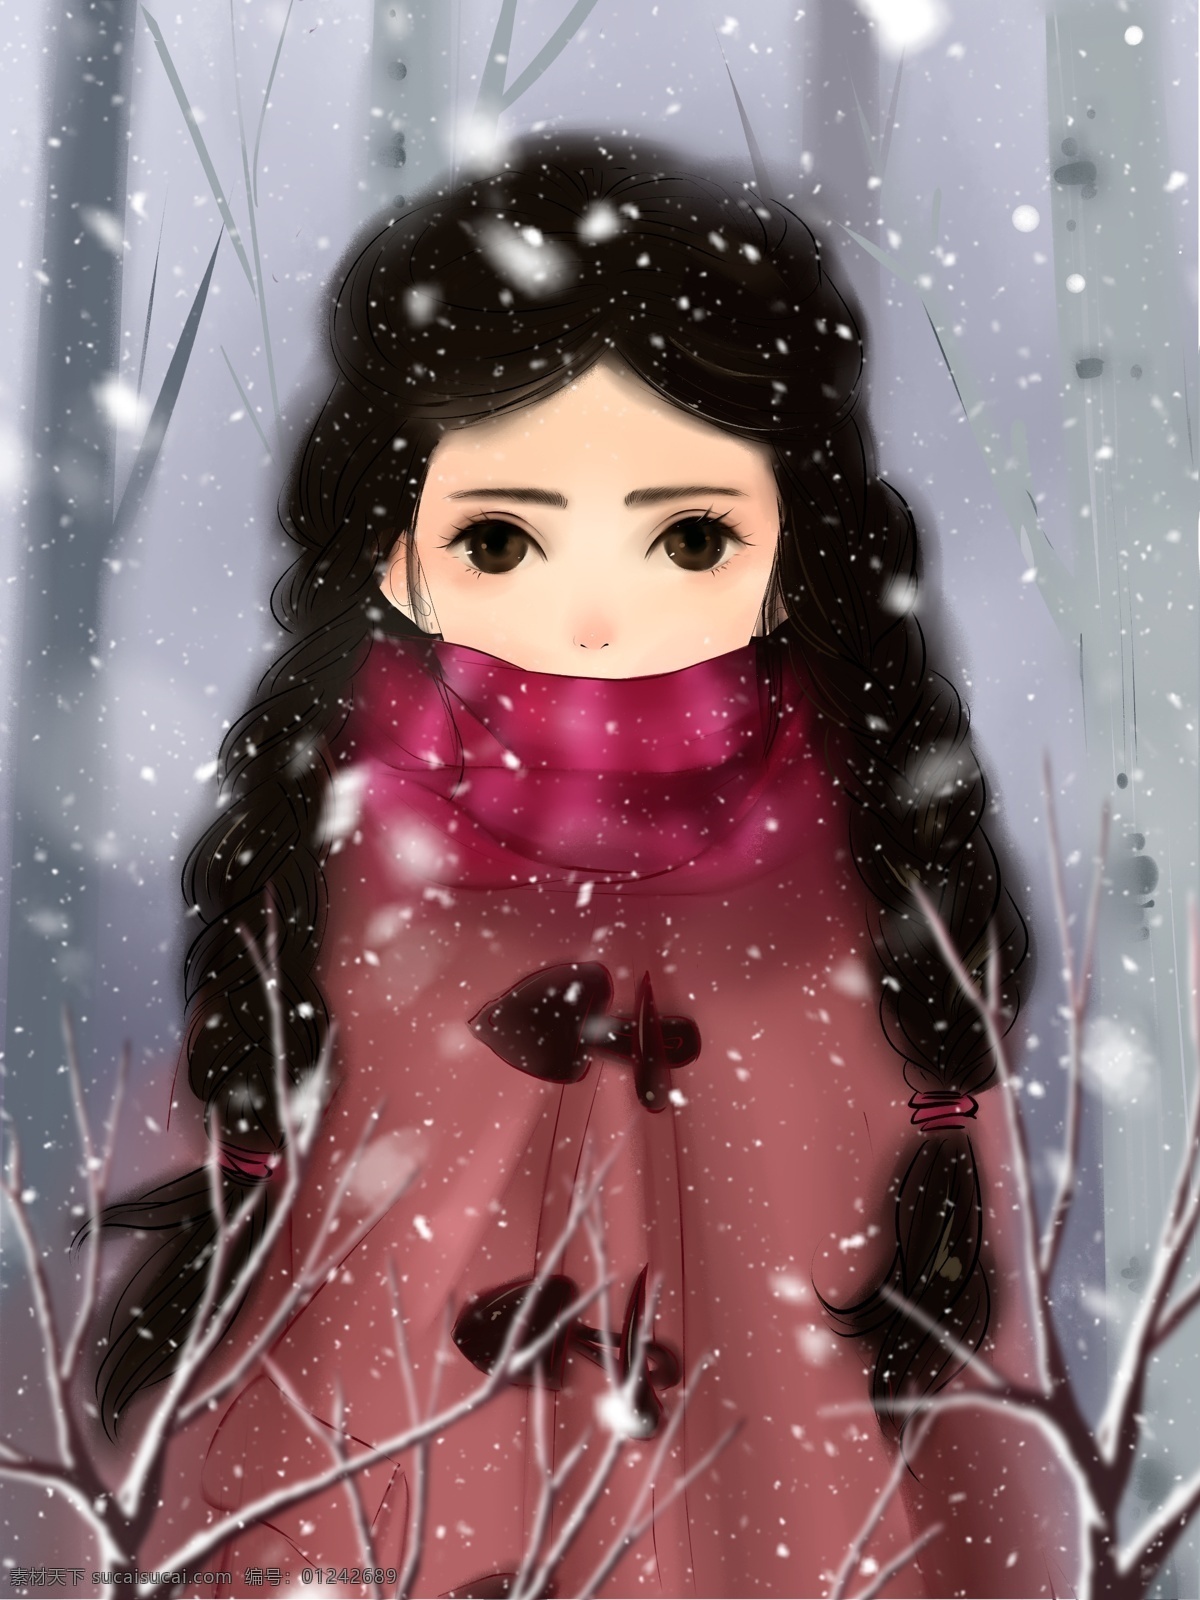 雪 中 戴 围巾 麻花 辫 女孩 水彩 风格 冬天 壁纸 插画 树枝 大雪 飘雪 配图 麻花辫